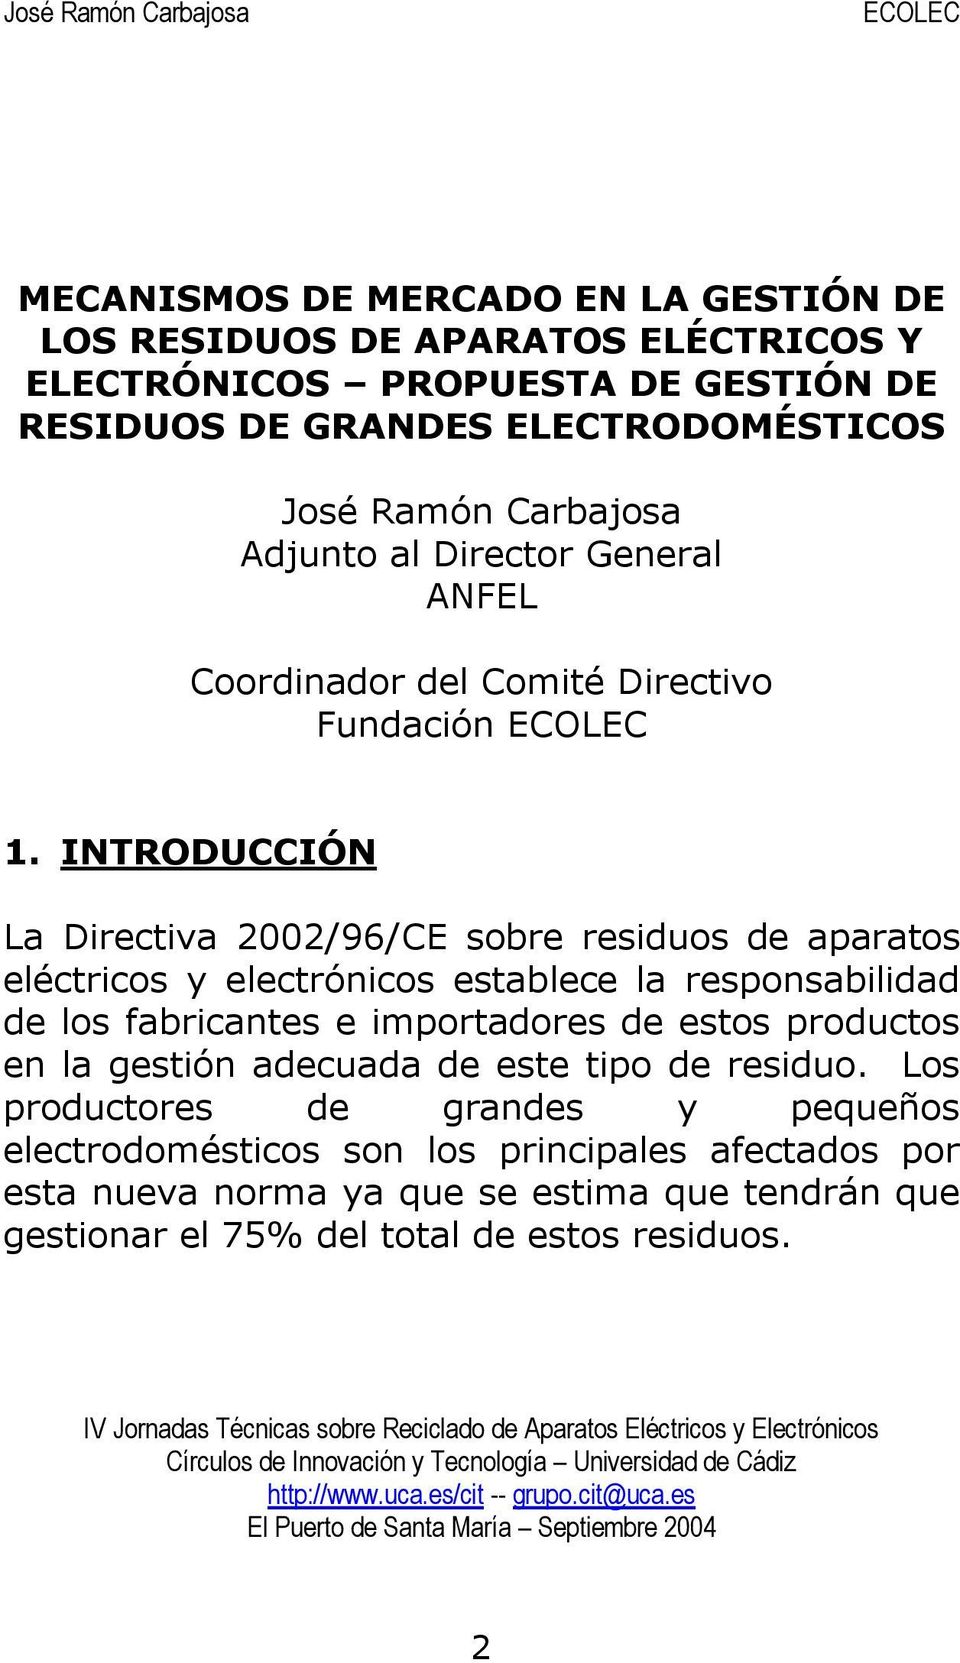 INTRODUCCIÓN La Directiva 2002/96/CE sobre residuos de aparatos eléctricos y electrónicos establece la responsabilidad de los fabricantes e importadores de estos